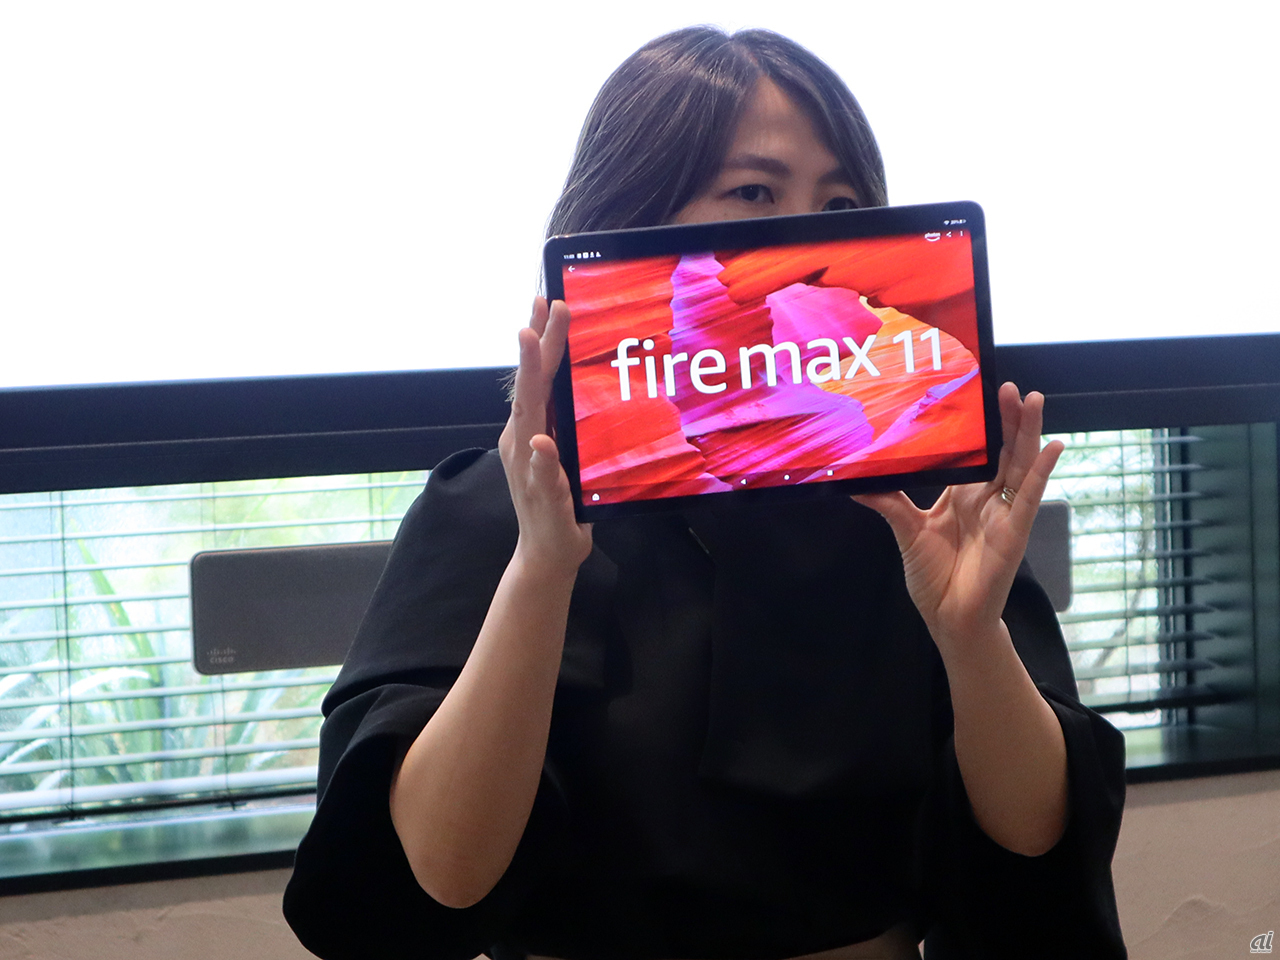 Amazon Fire max 11